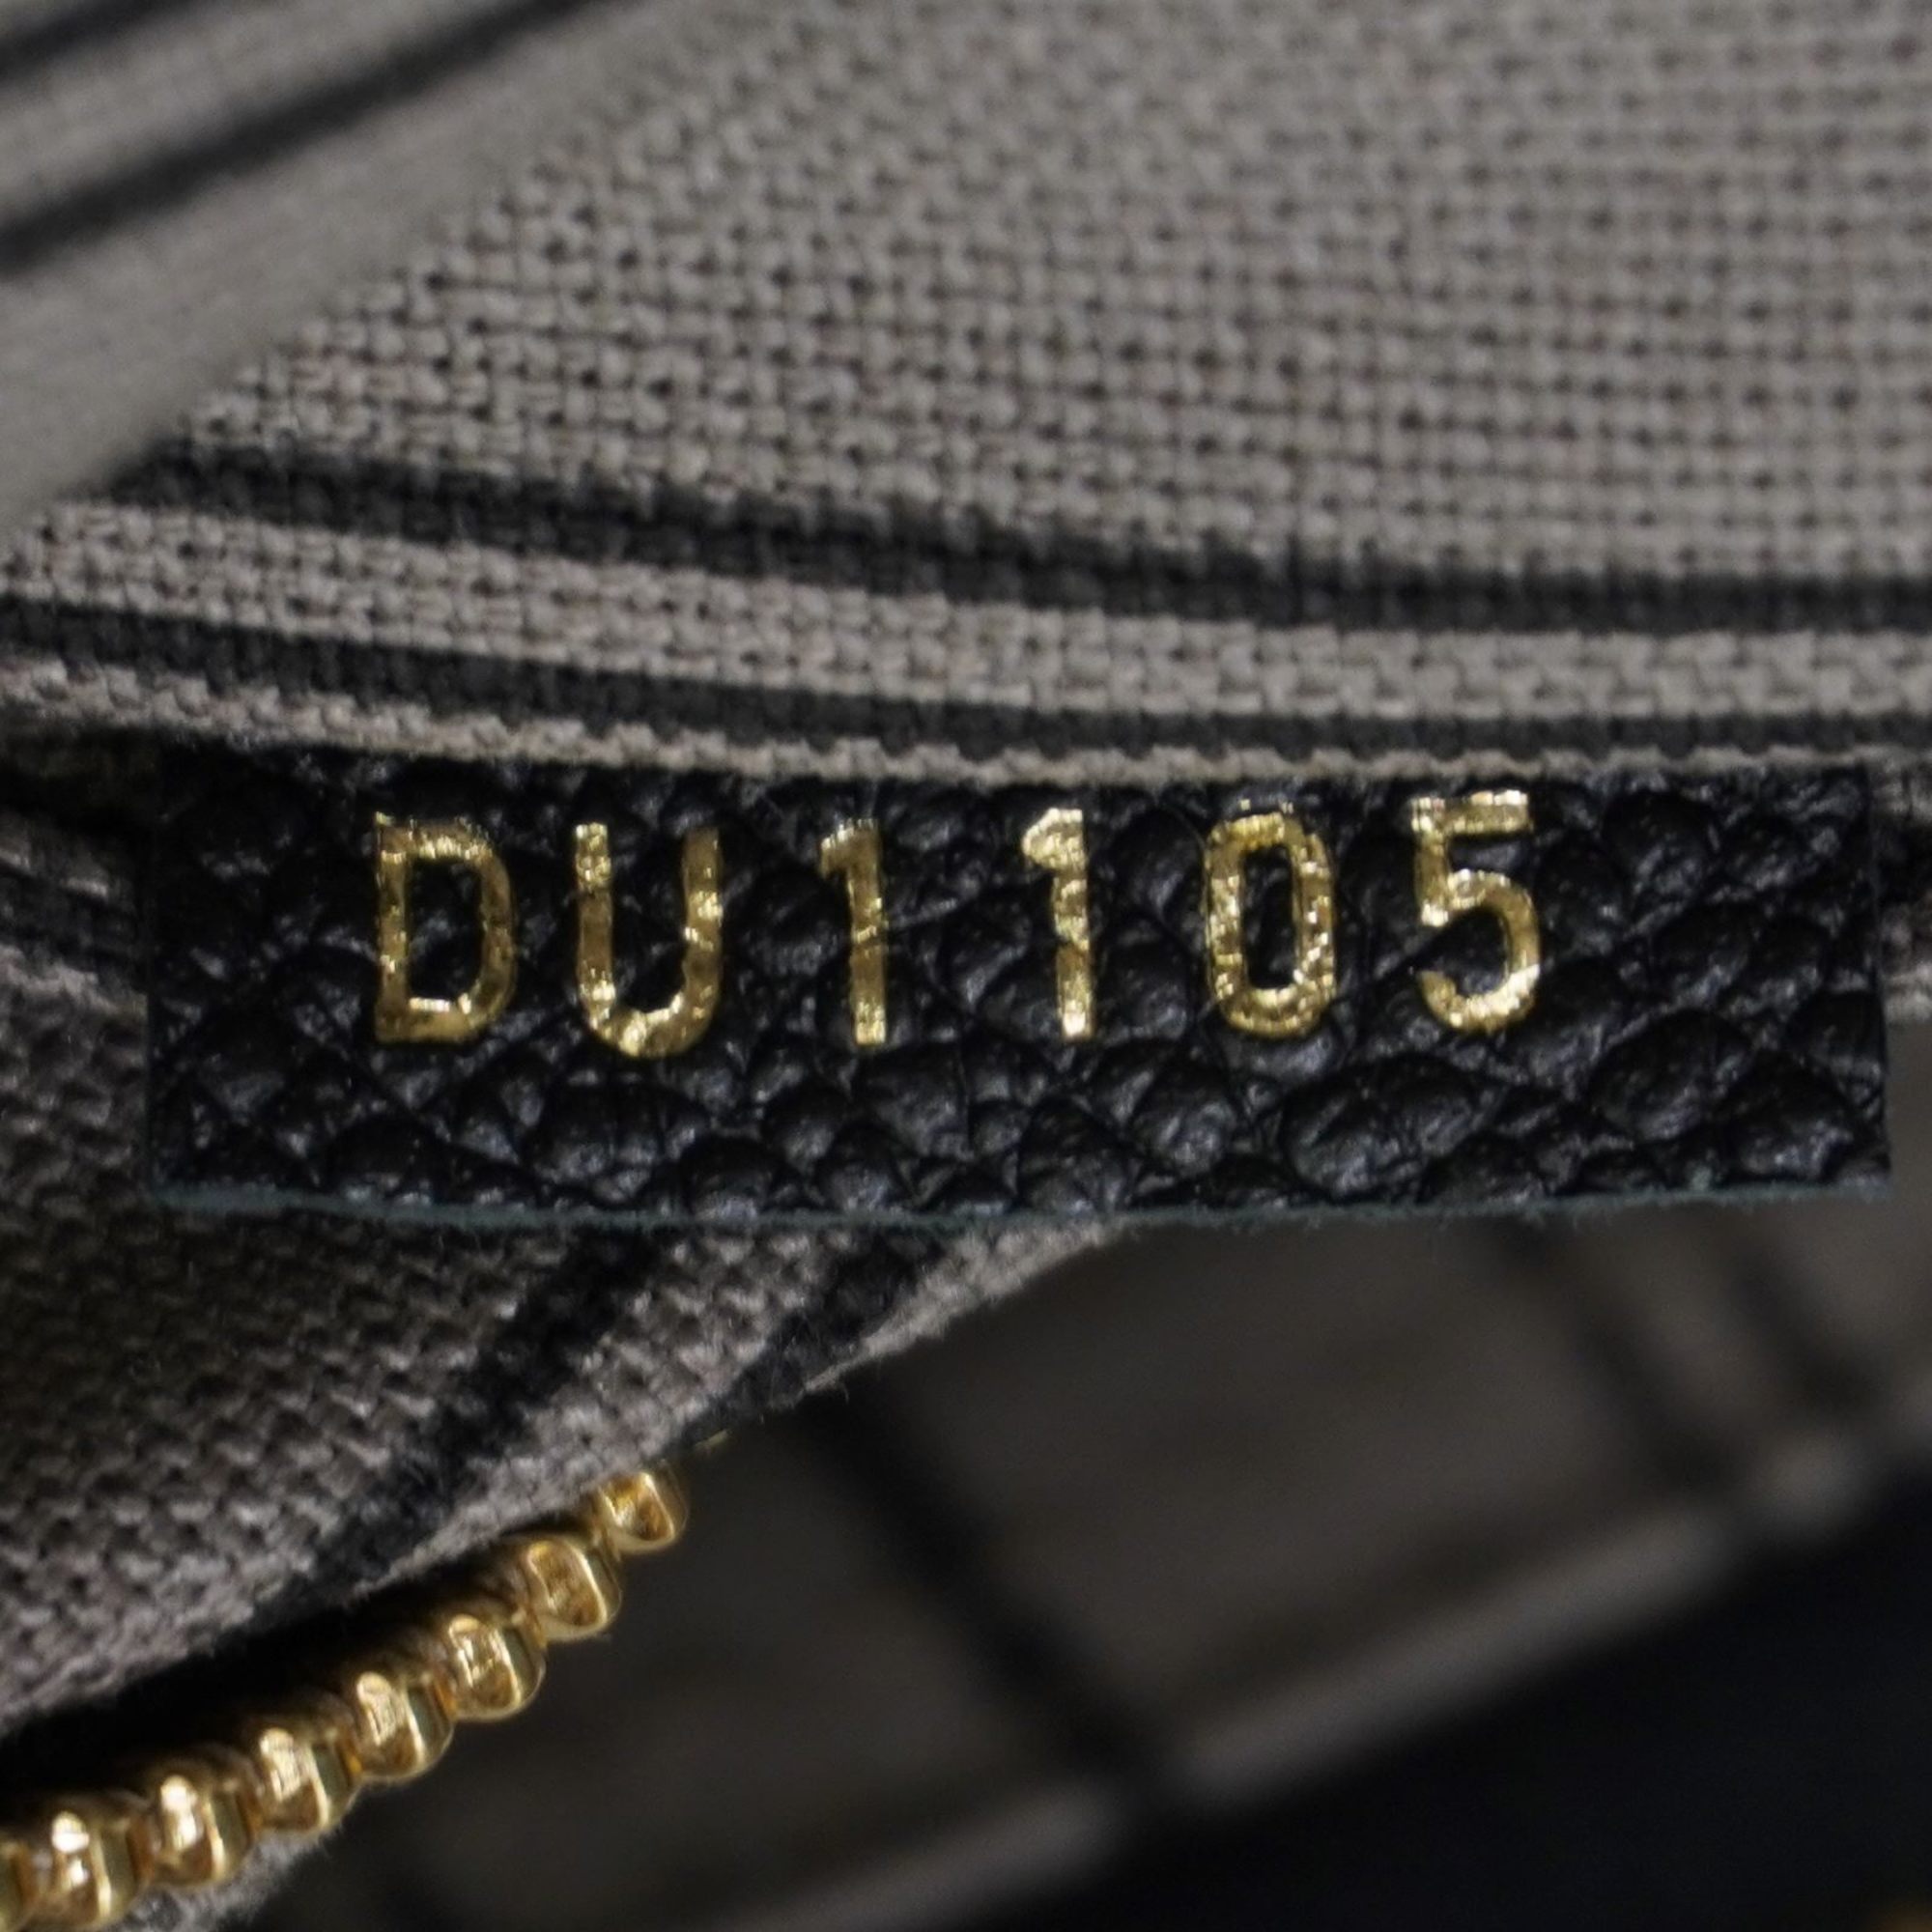 LOUIS VUITTON Speedy Bandouliere 30NM M42406 Handbag Shoulder Bag Black Monogram Empreinte Leather A324 Women's Men's Bags